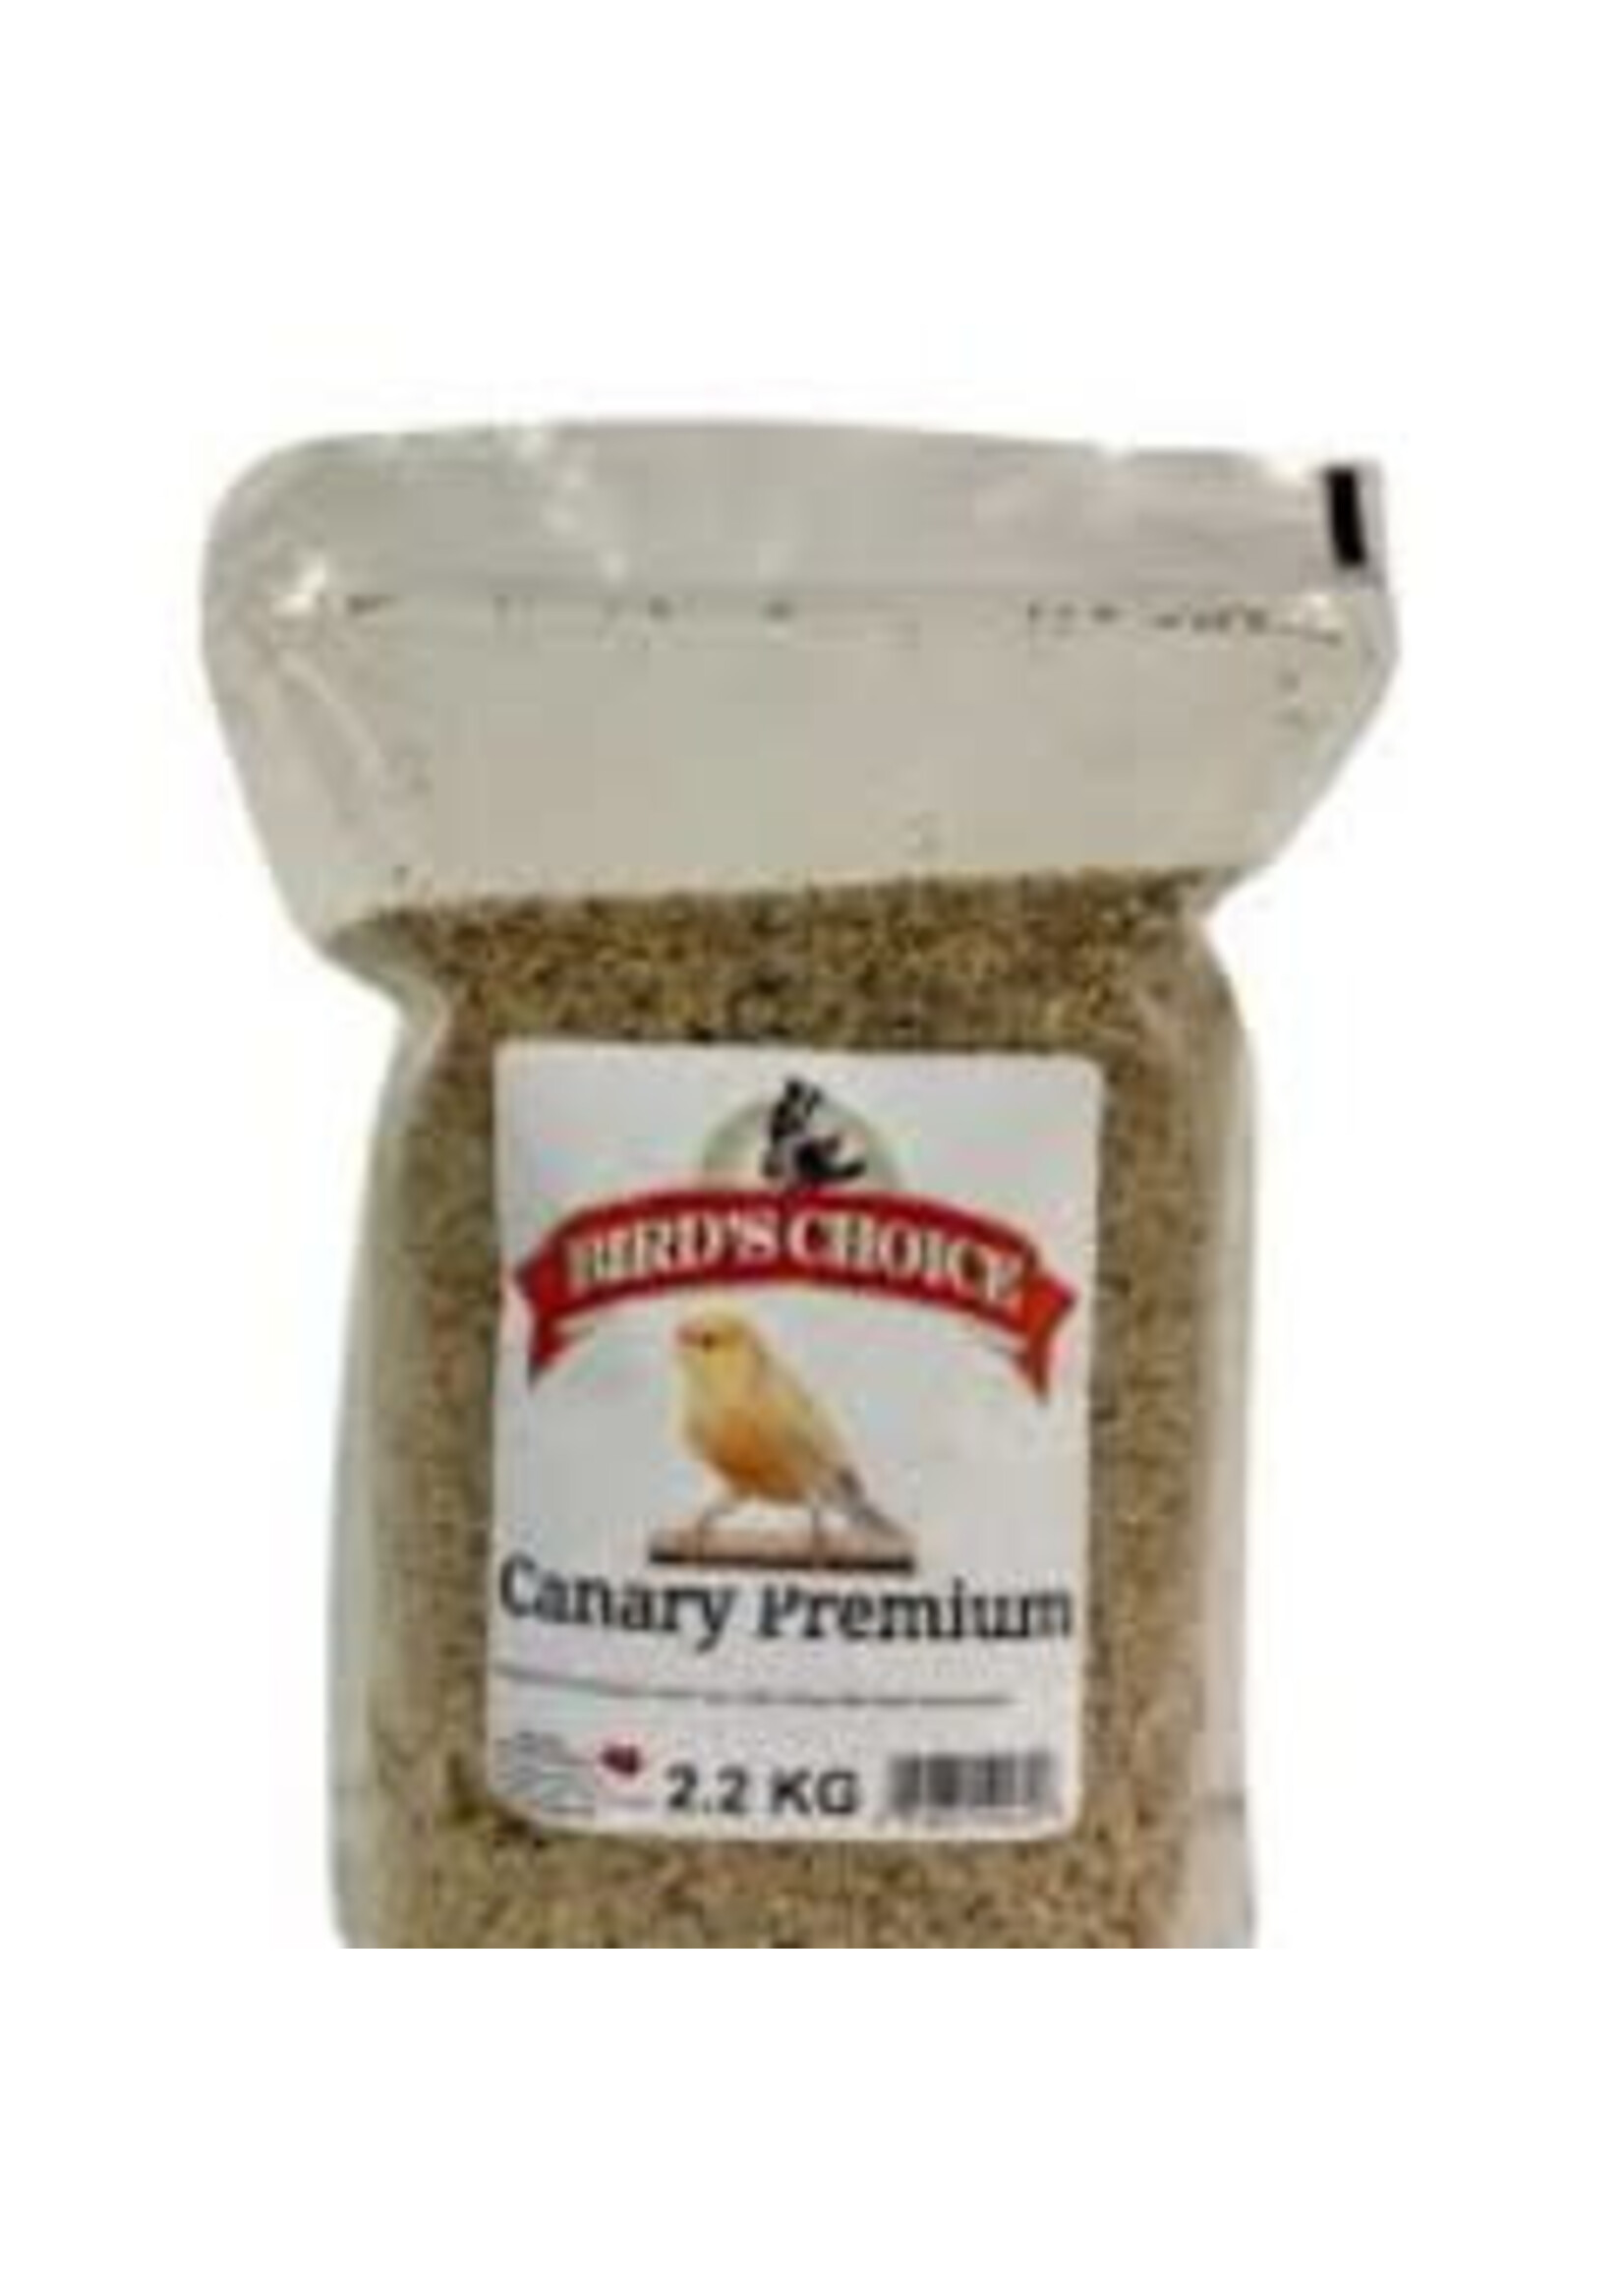 Bird Choice Birds Choice - Canary Premium 2.2kg